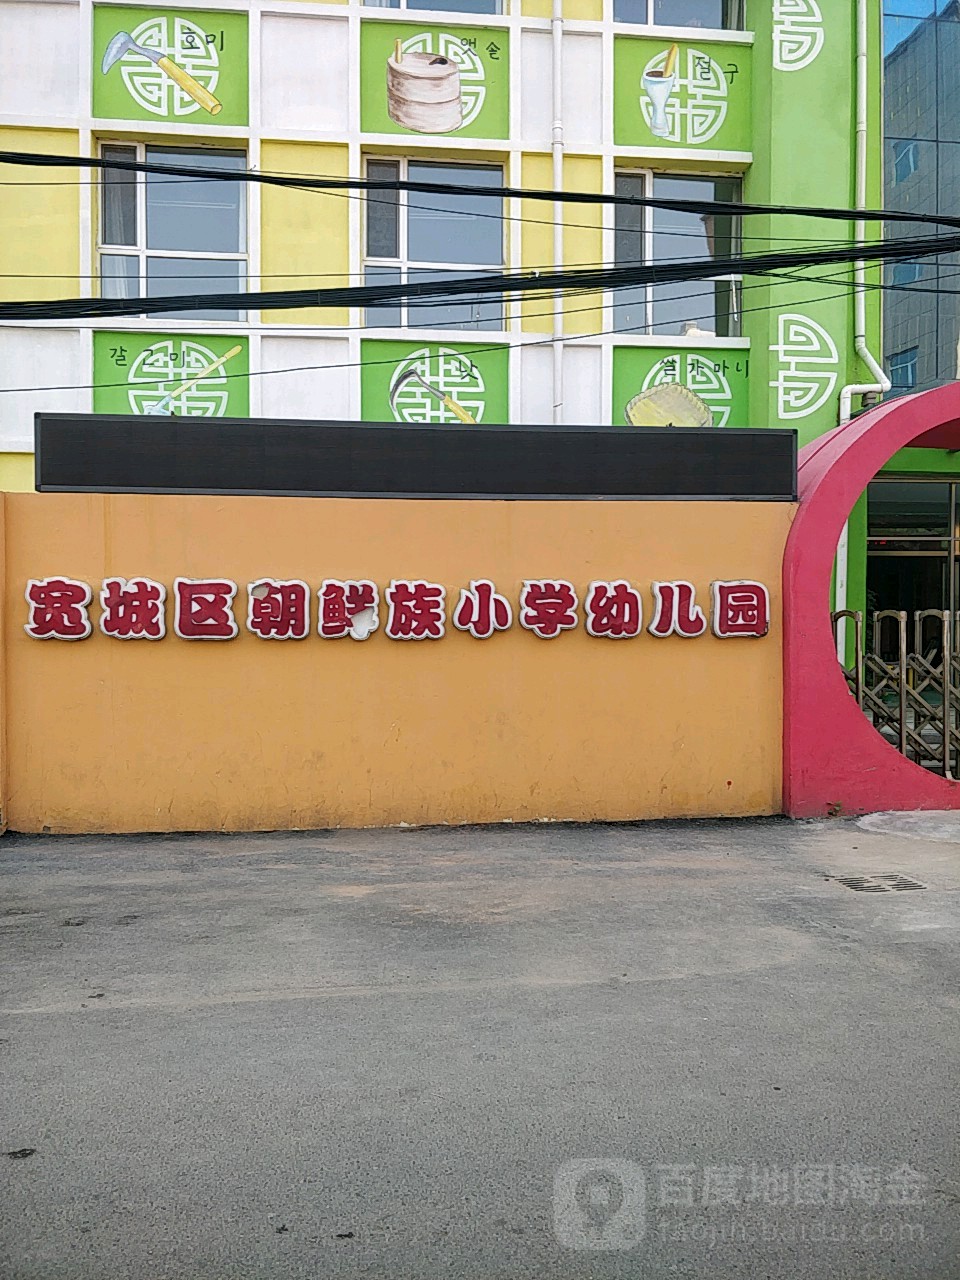 长春市宽城区朝鲜族小学幼儿园的图片